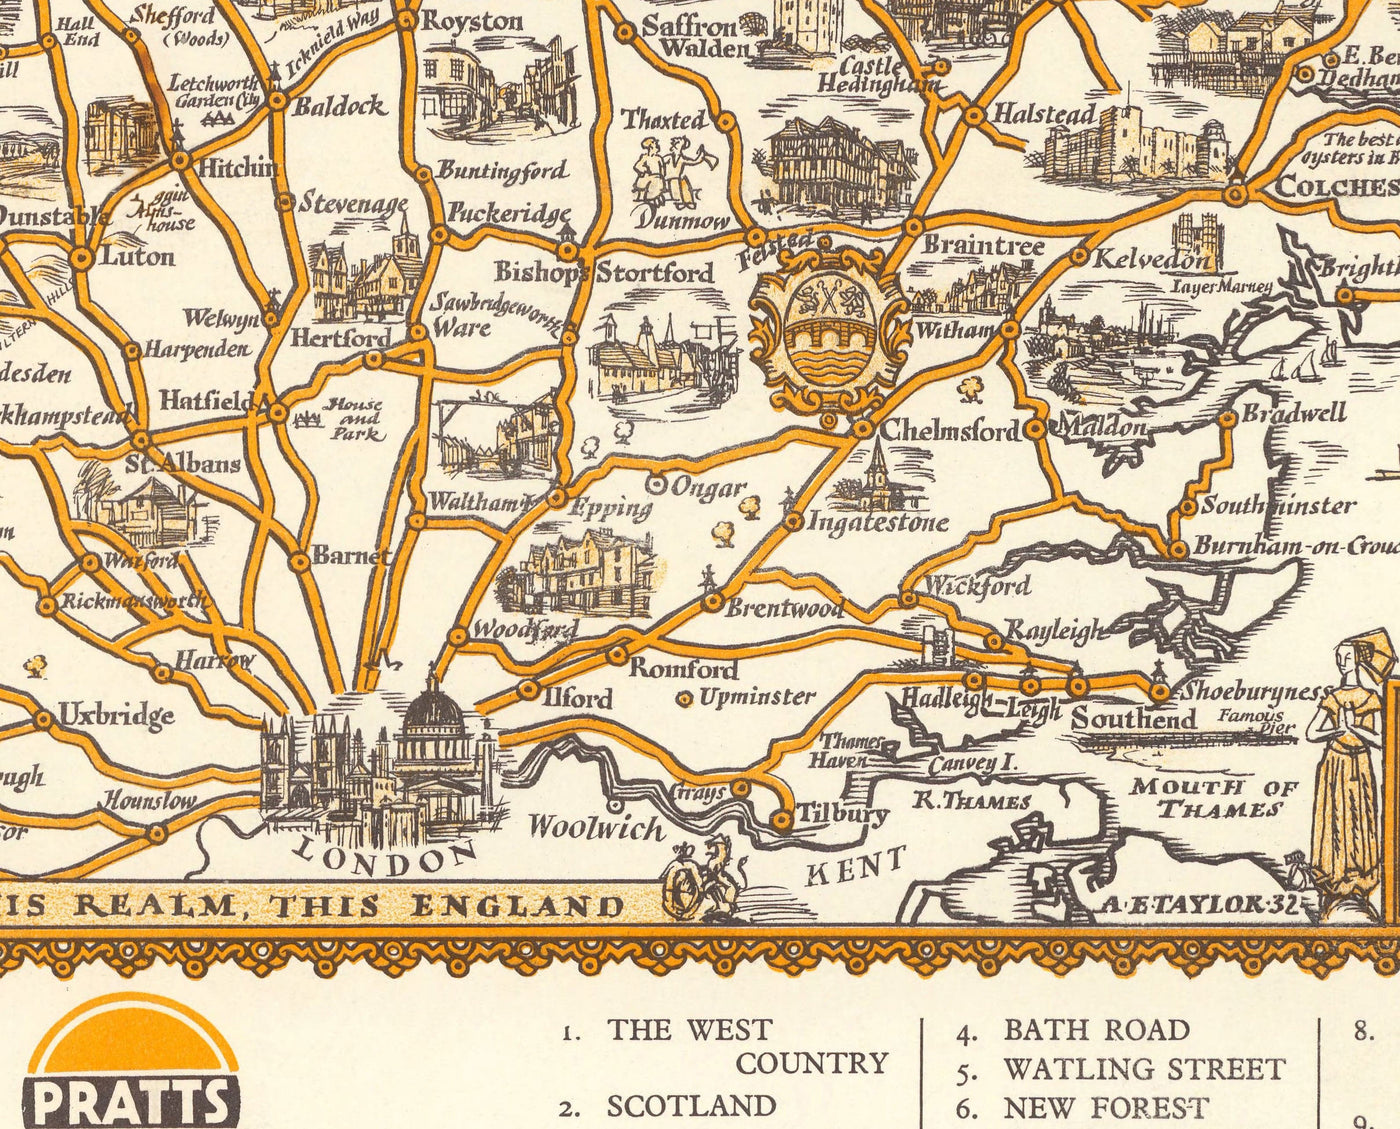 PRIATTS Plan d'essai élevé des Midlands 1932 - Essex, Oxford, Birmingham - Vieille Vintage Motoring Carte de la voiture - Esso, huile standard